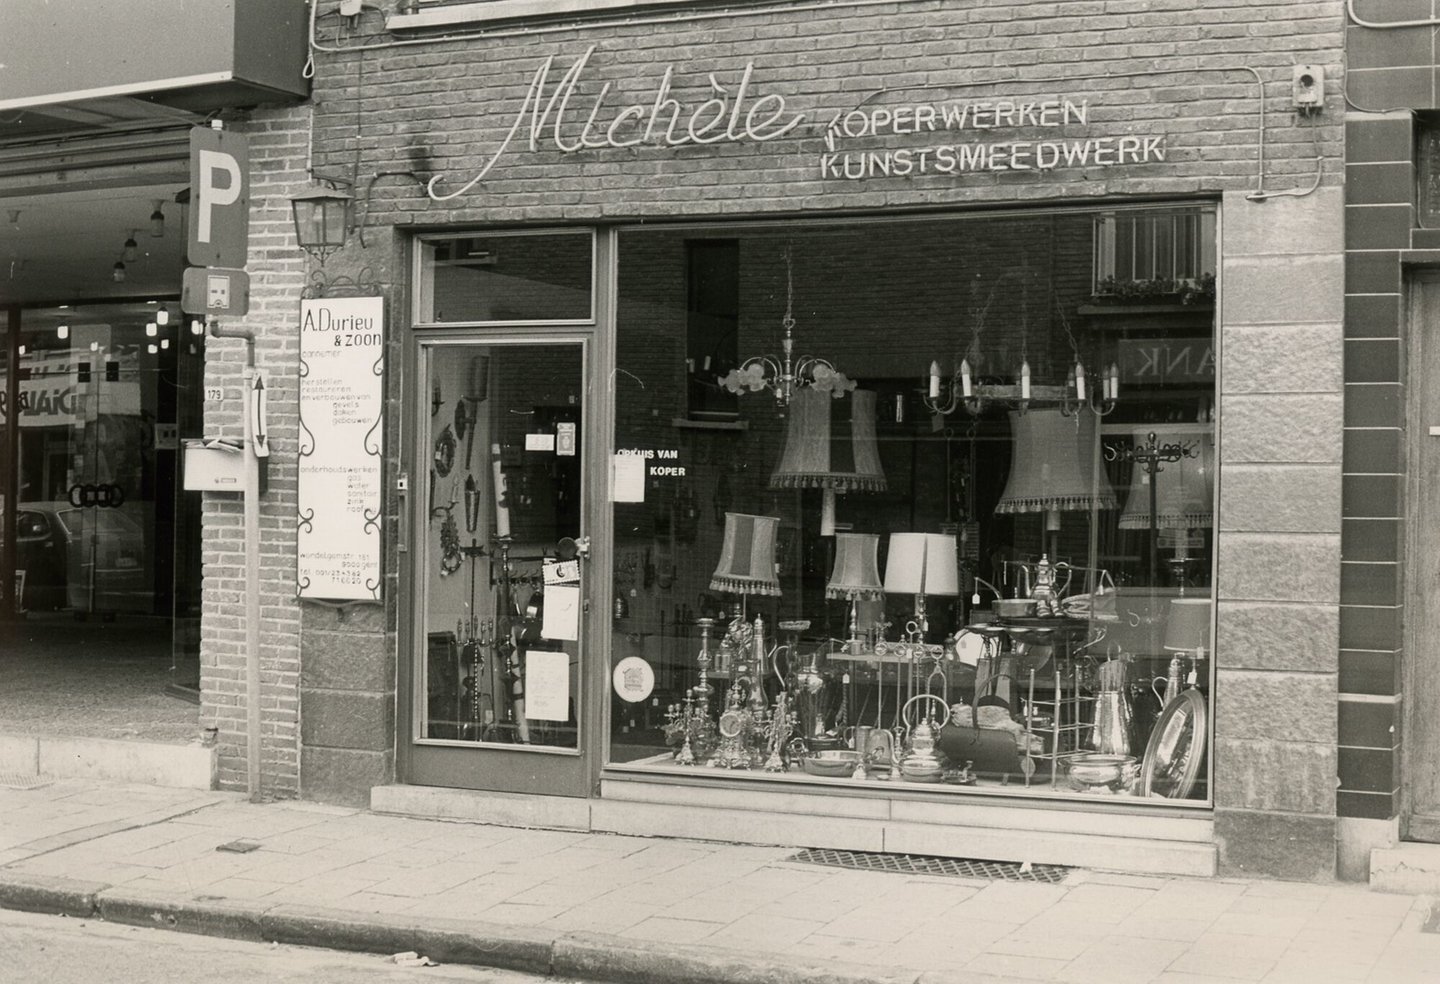 Etalage van Michèle, een winkel van koper- en kunstsmeedwerk in Gent